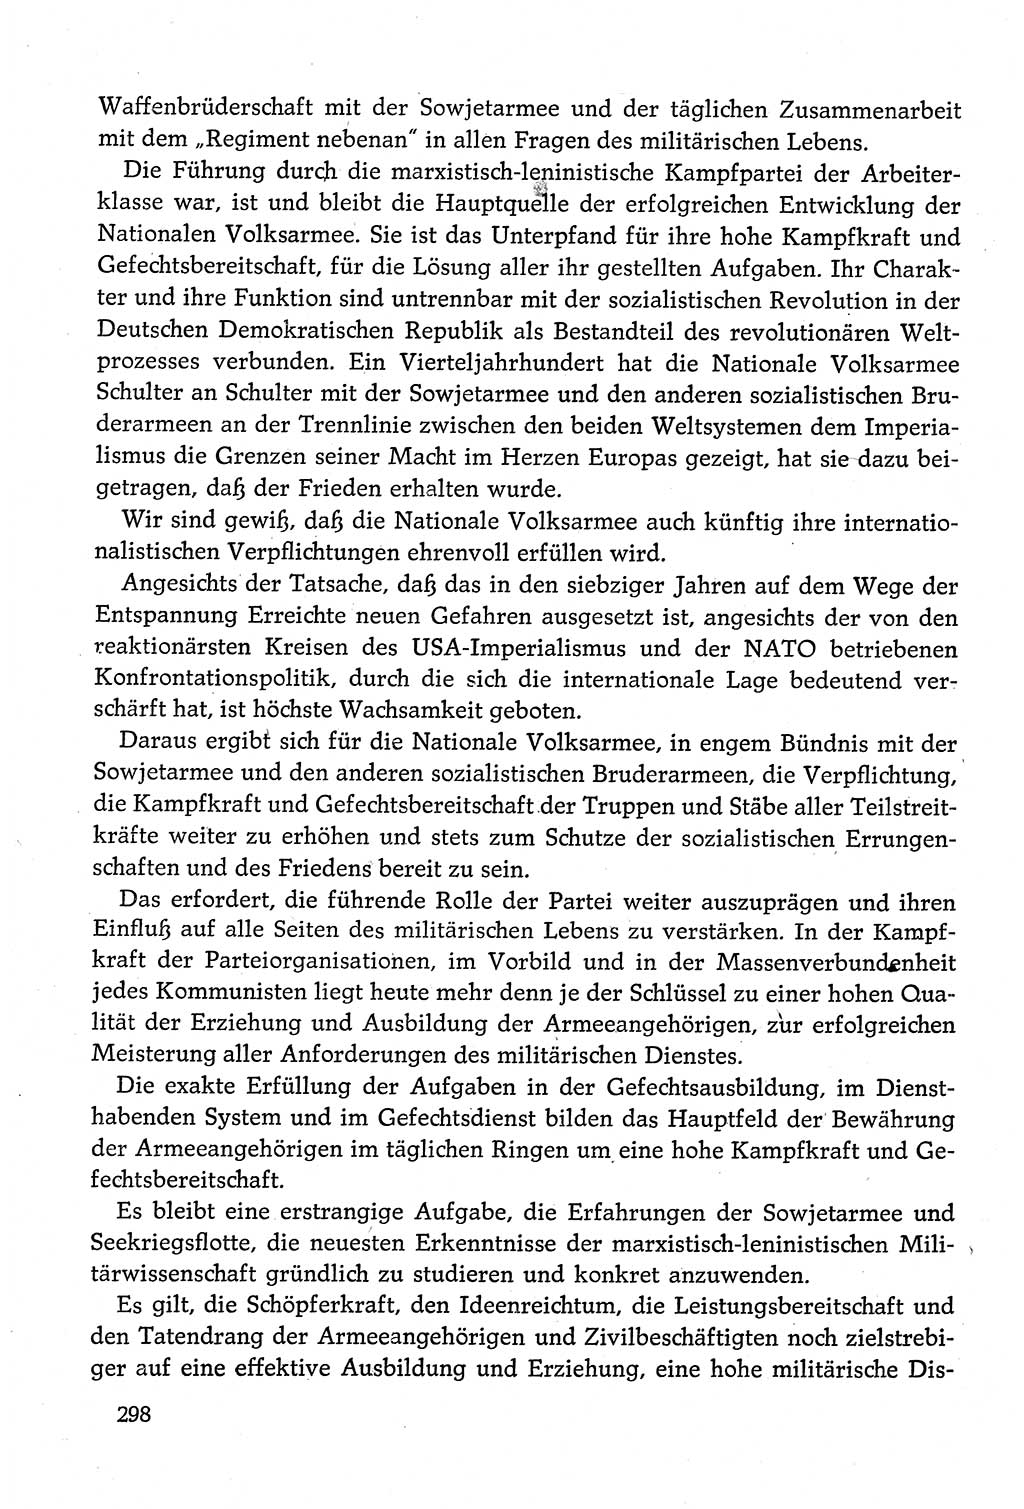 Dokumente der Sozialistischen Einheitspartei Deutschlands (SED) [Deutsche Demokratische Republik (DDR)] 1980-1981, Seite 298 (Dok. SED DDR 1980-1981, S. 298)